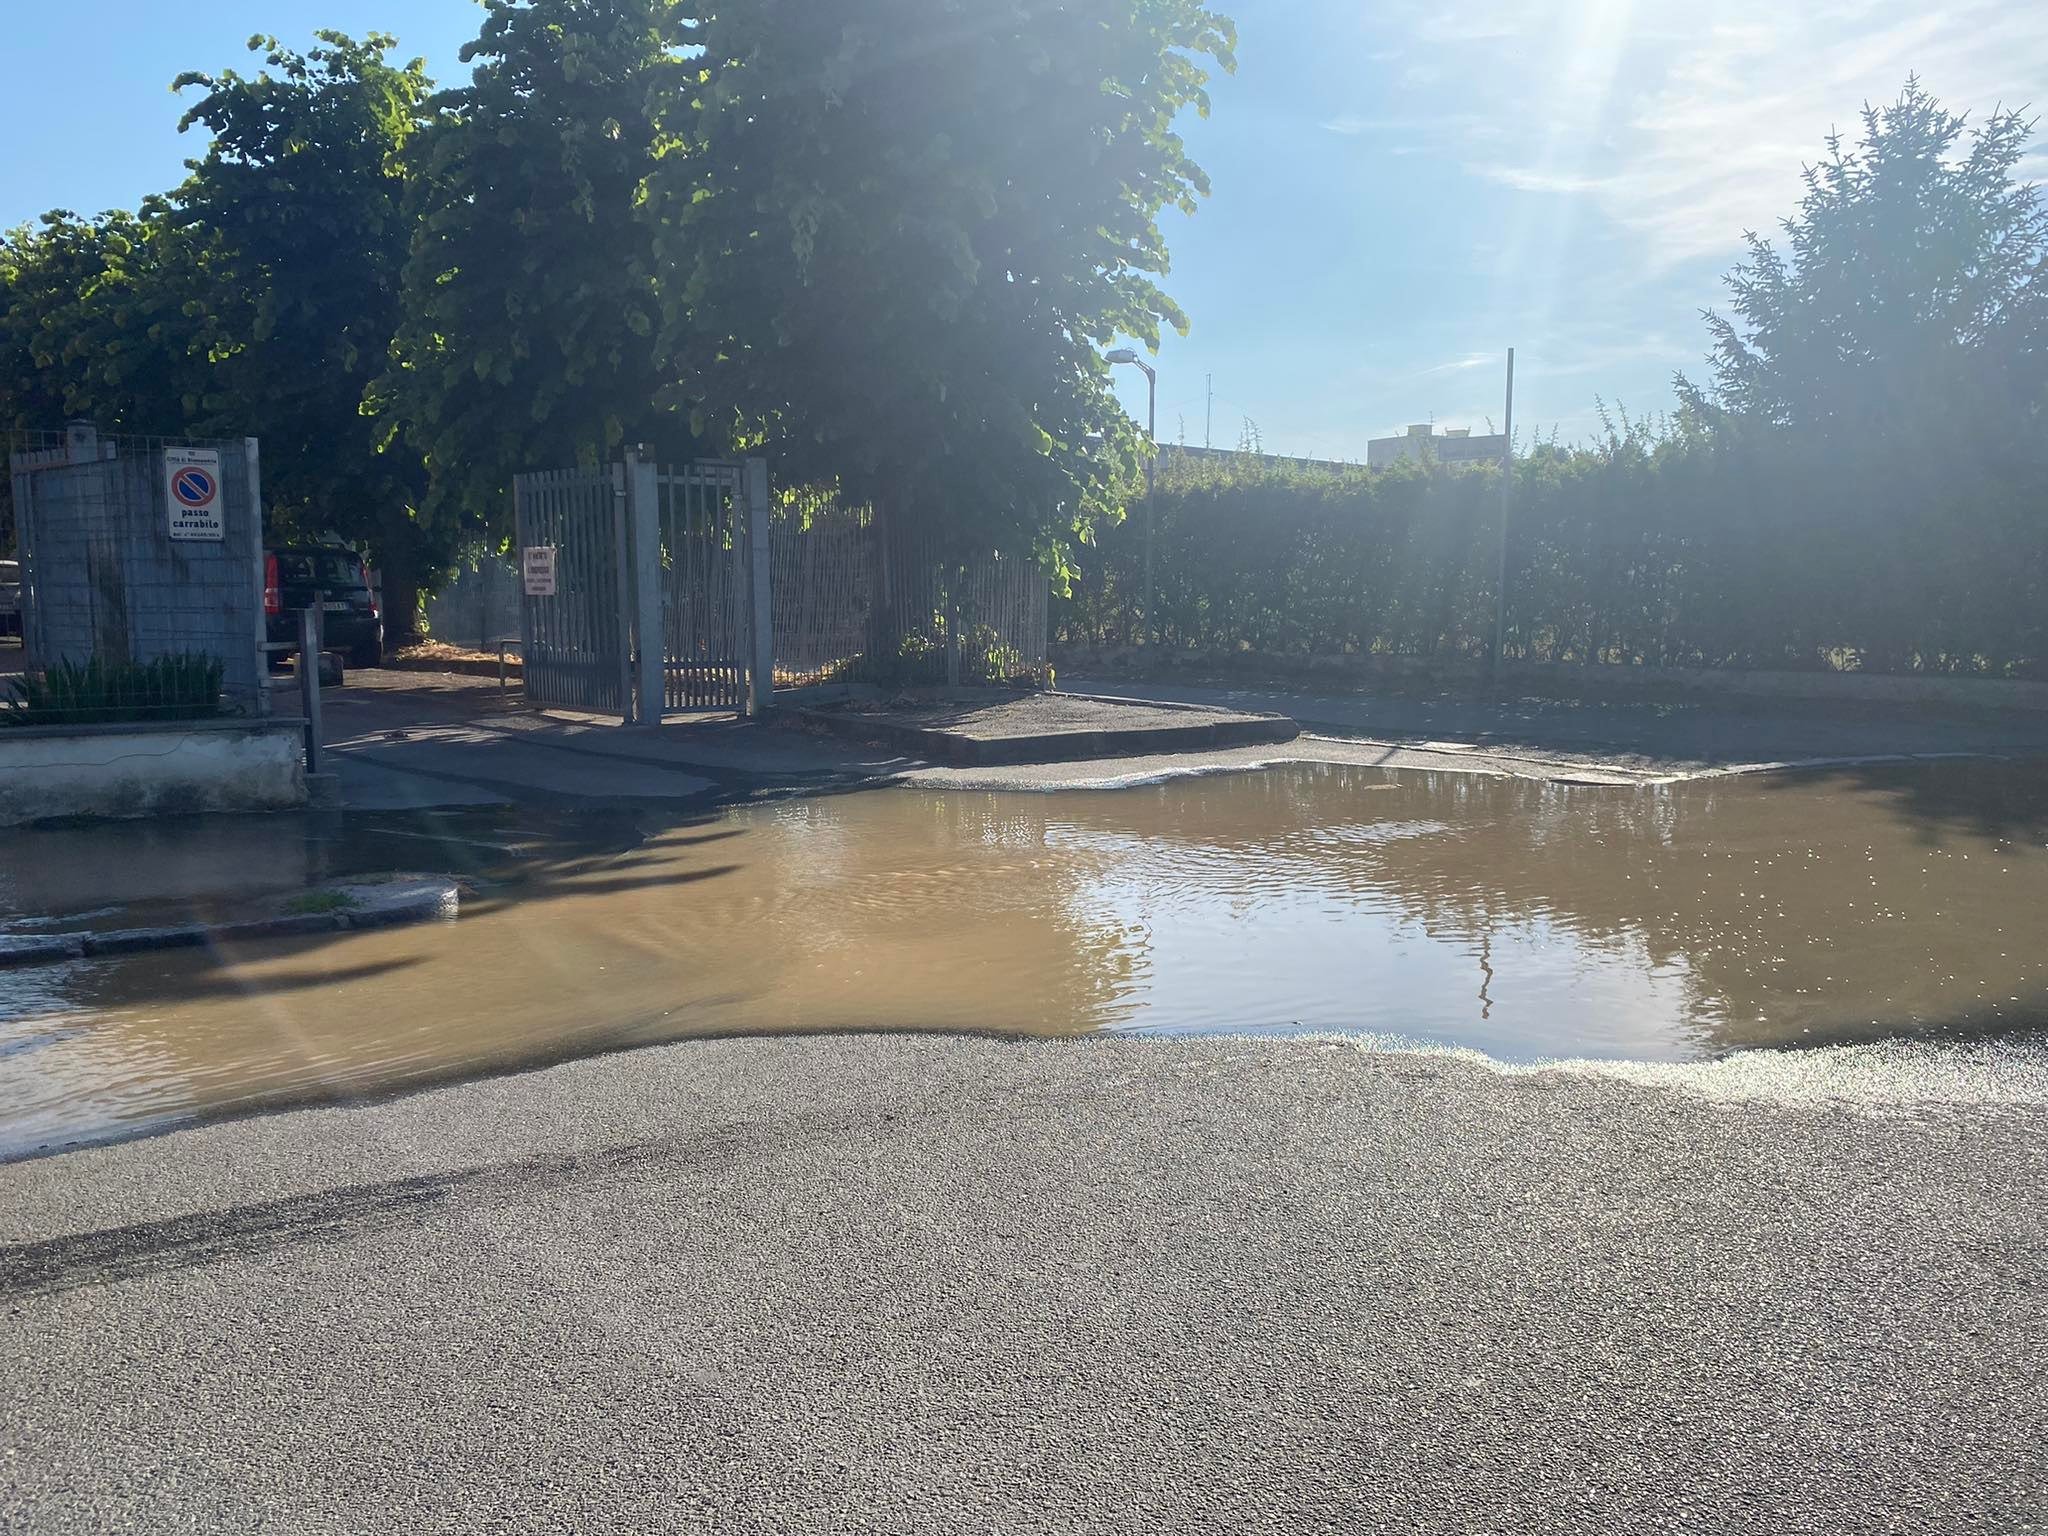 Una tubatura dell’acqua si è rotta in via Galimberti: strada allagata